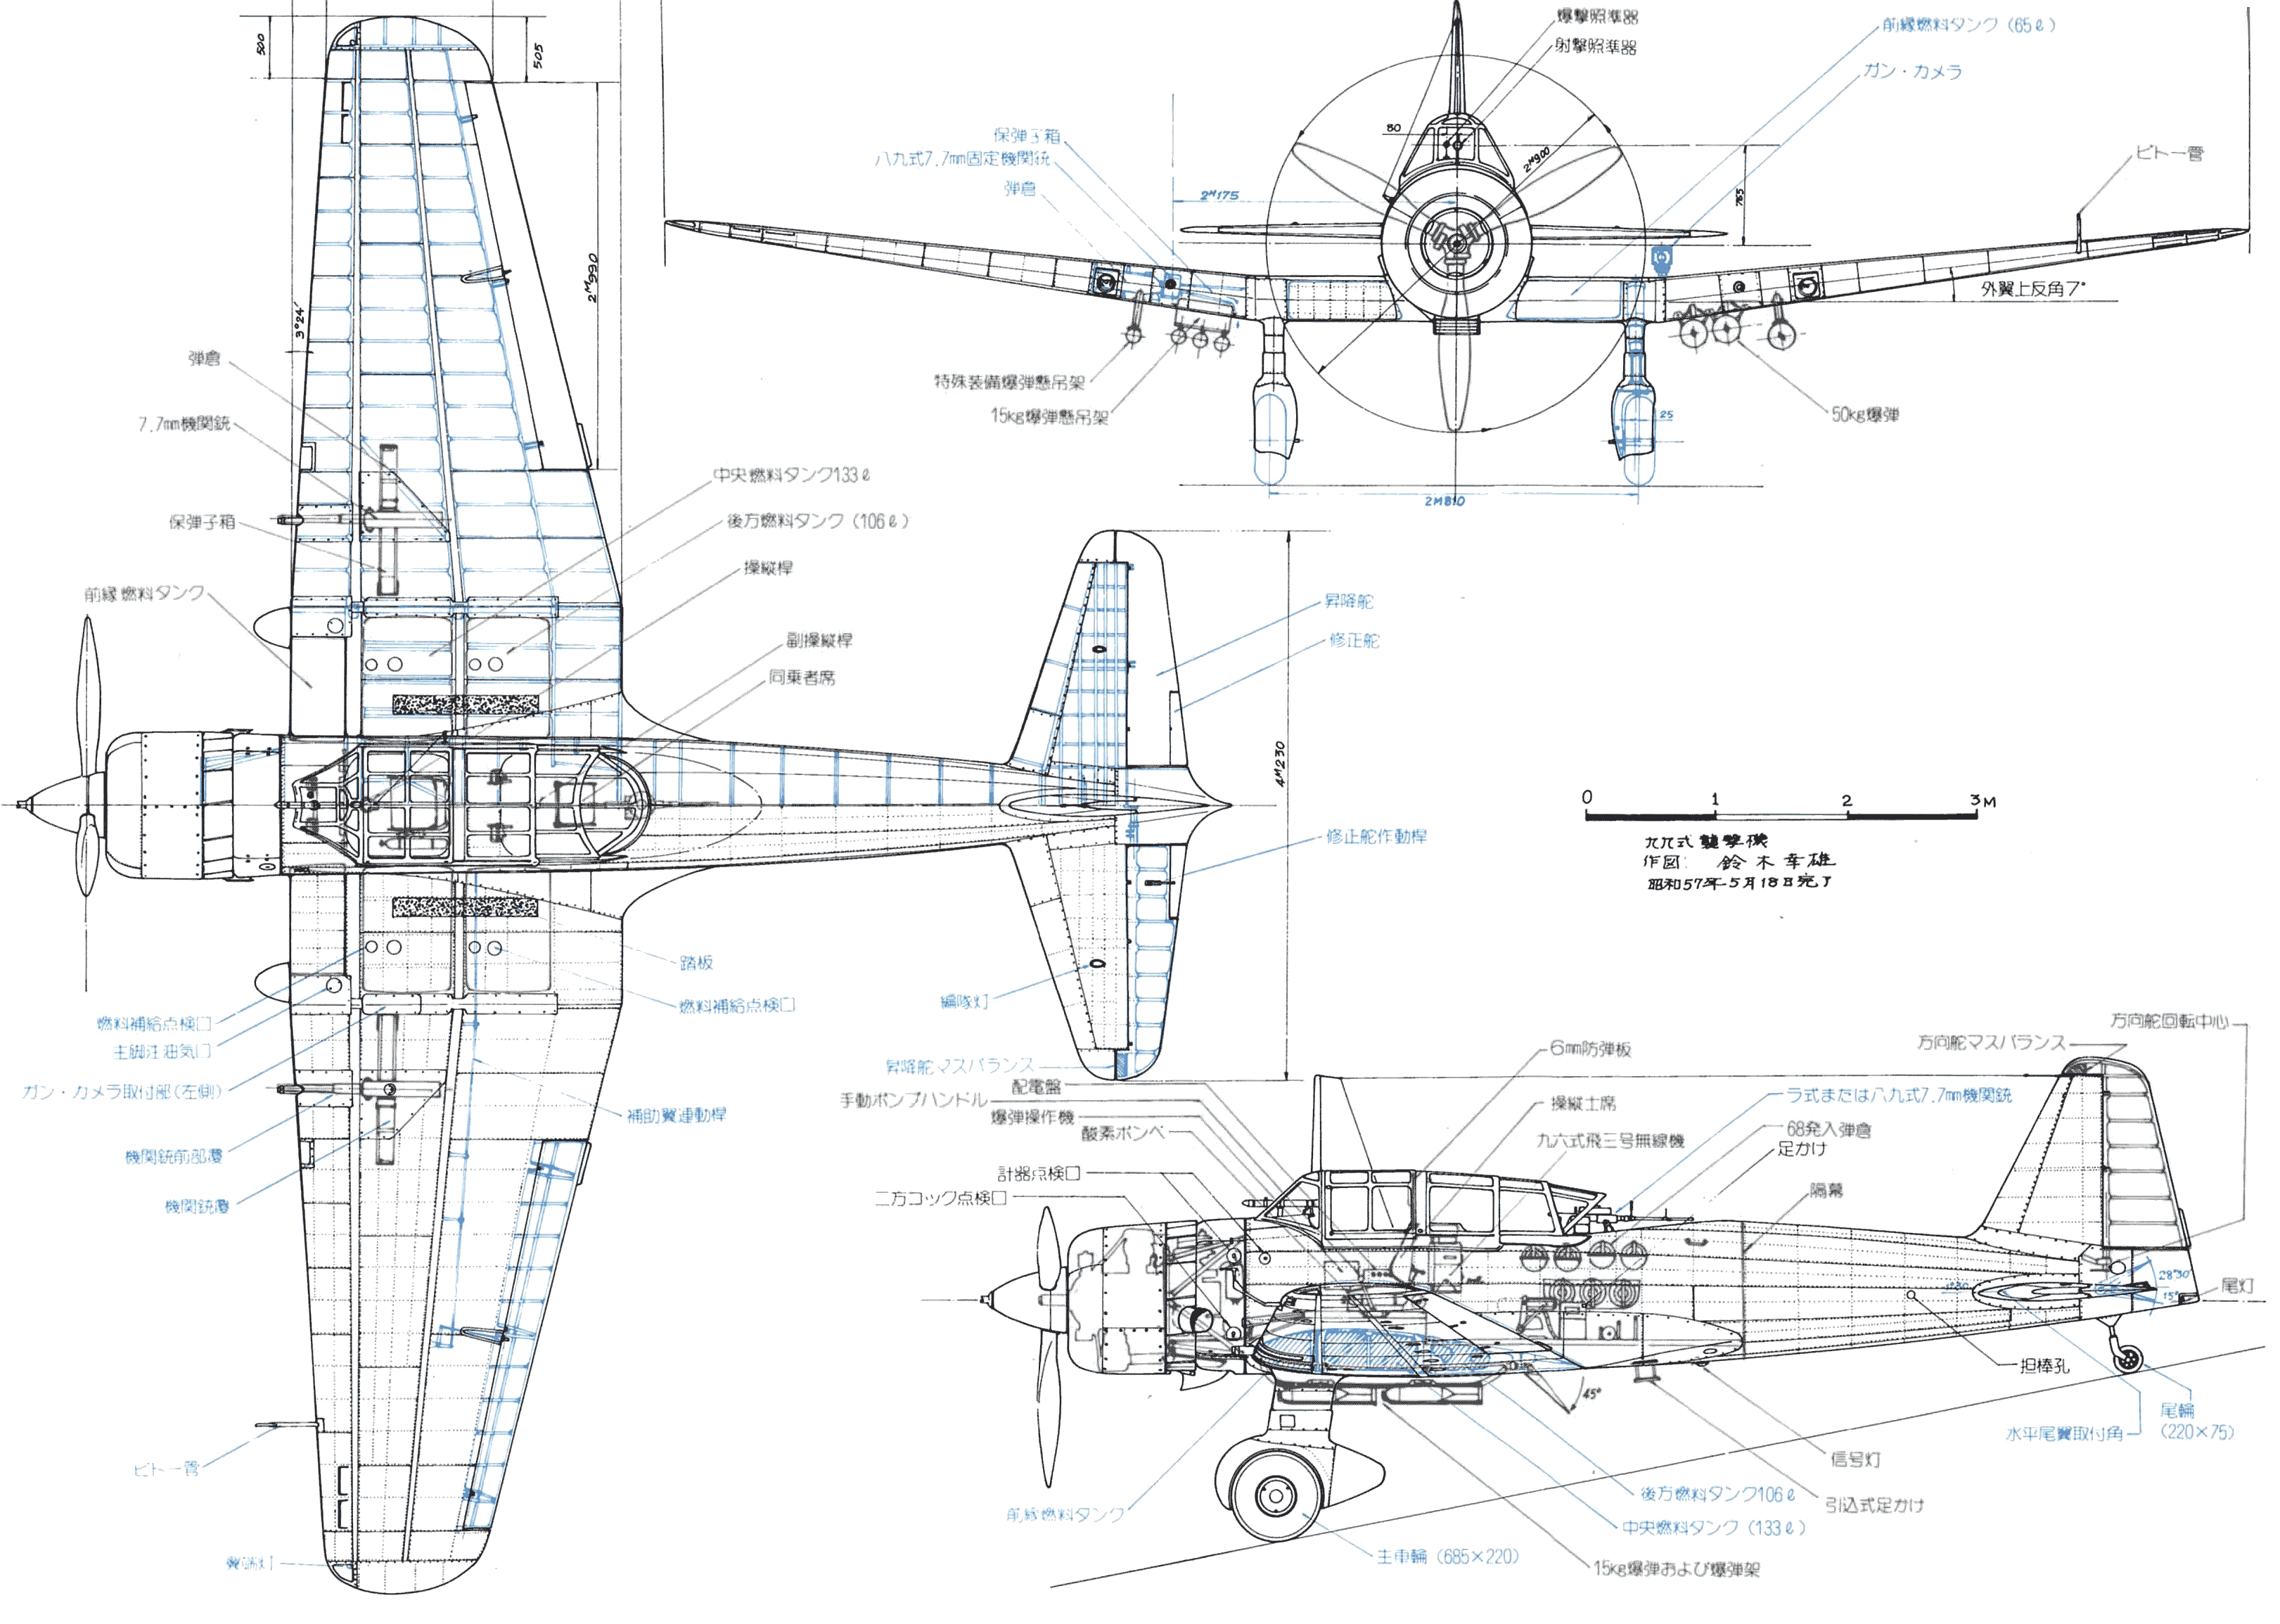 Mitsubishi Ki-51 blueprint